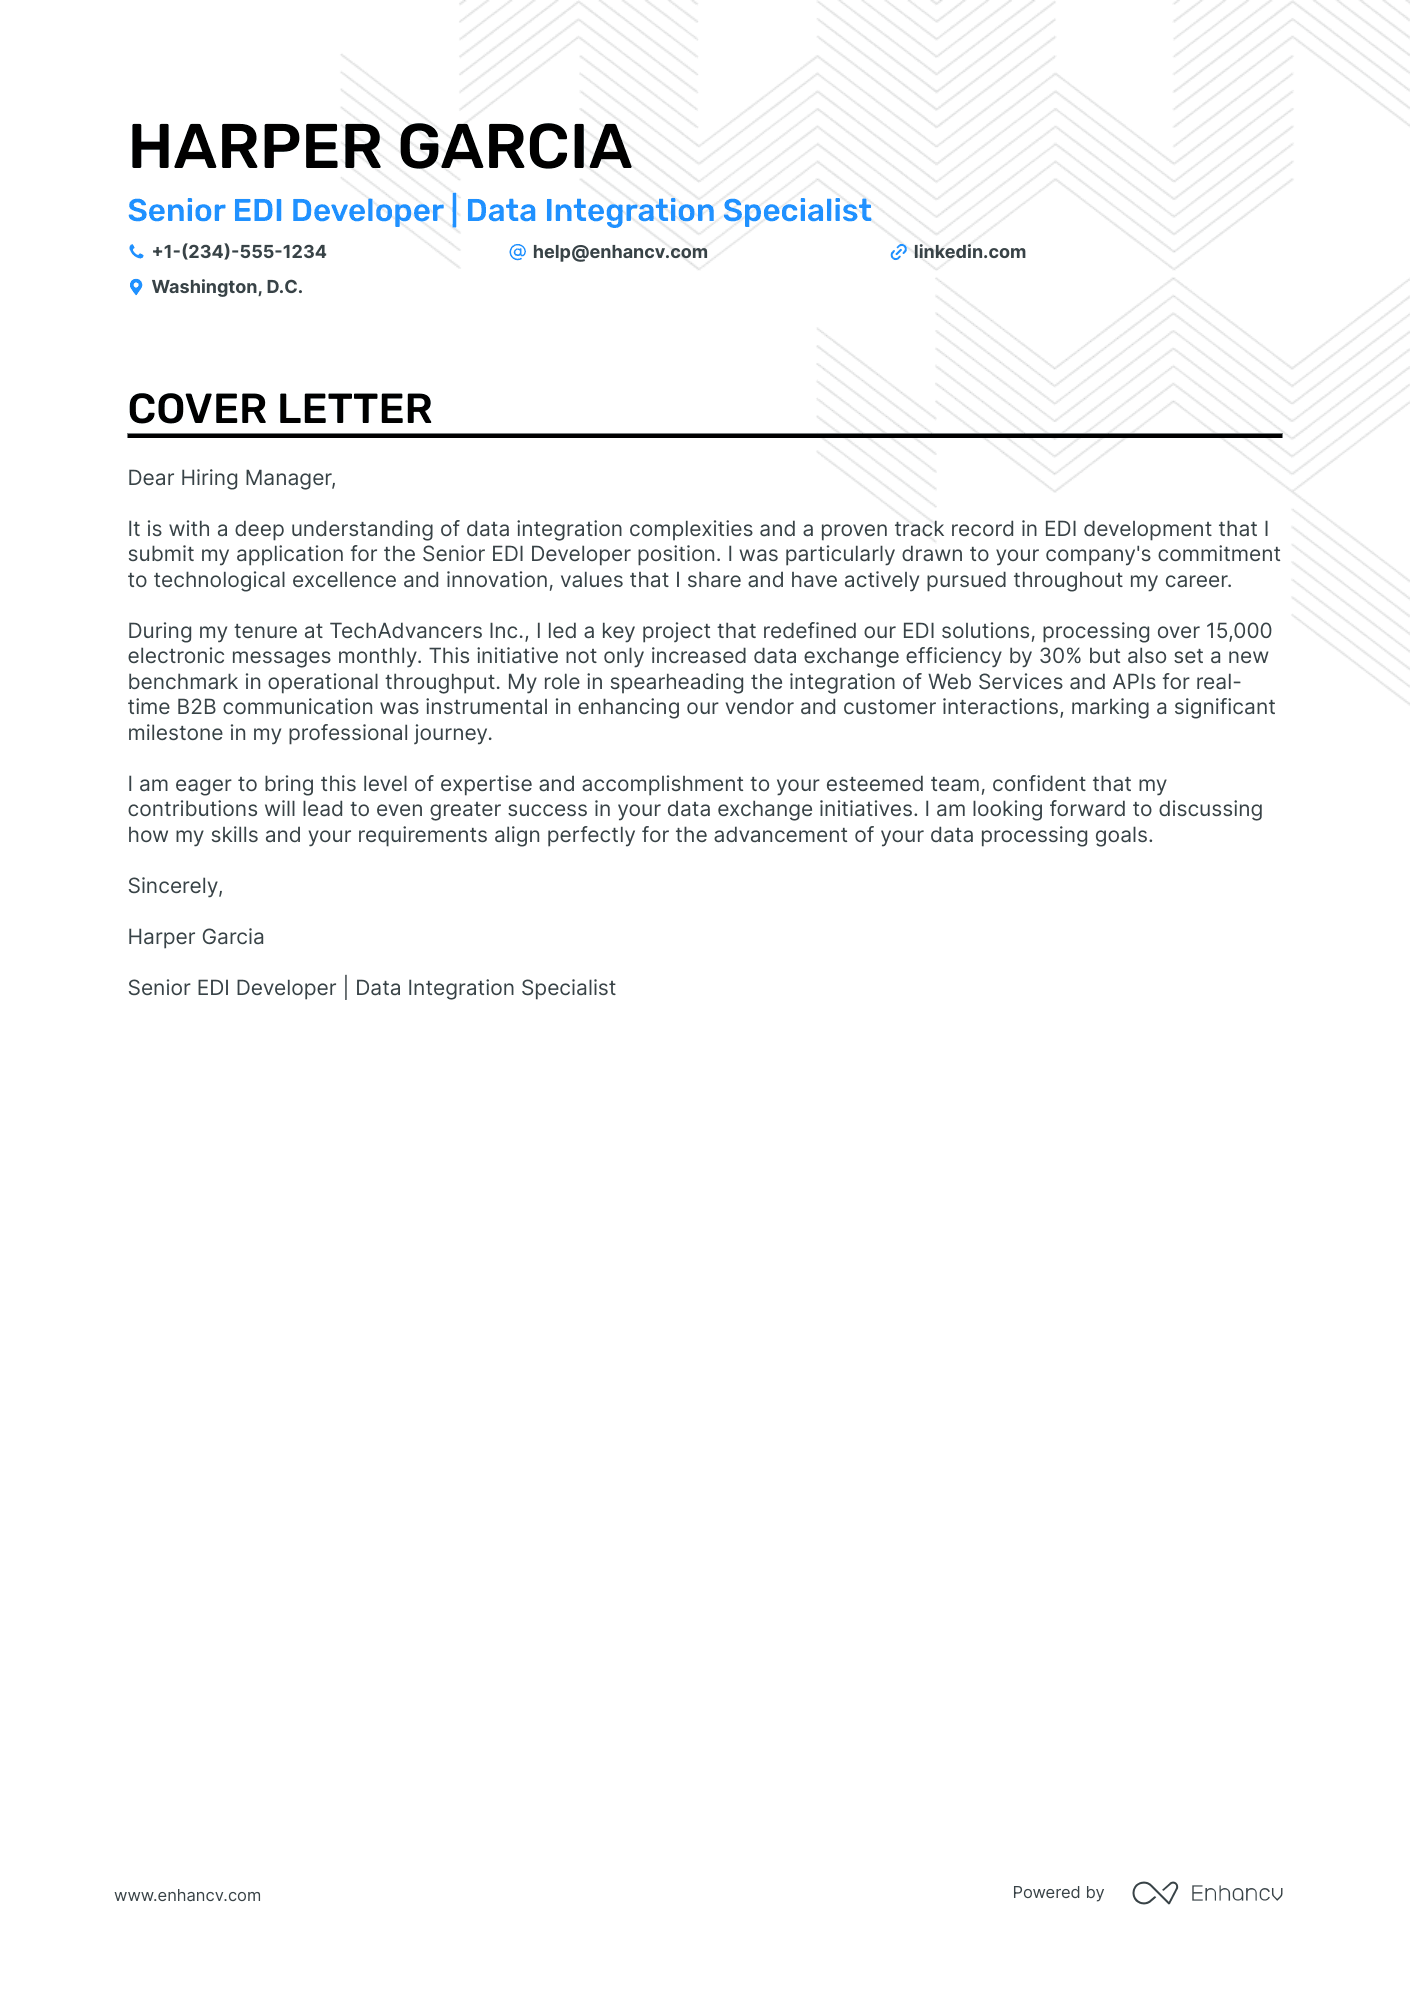 EDI Developer cover letter